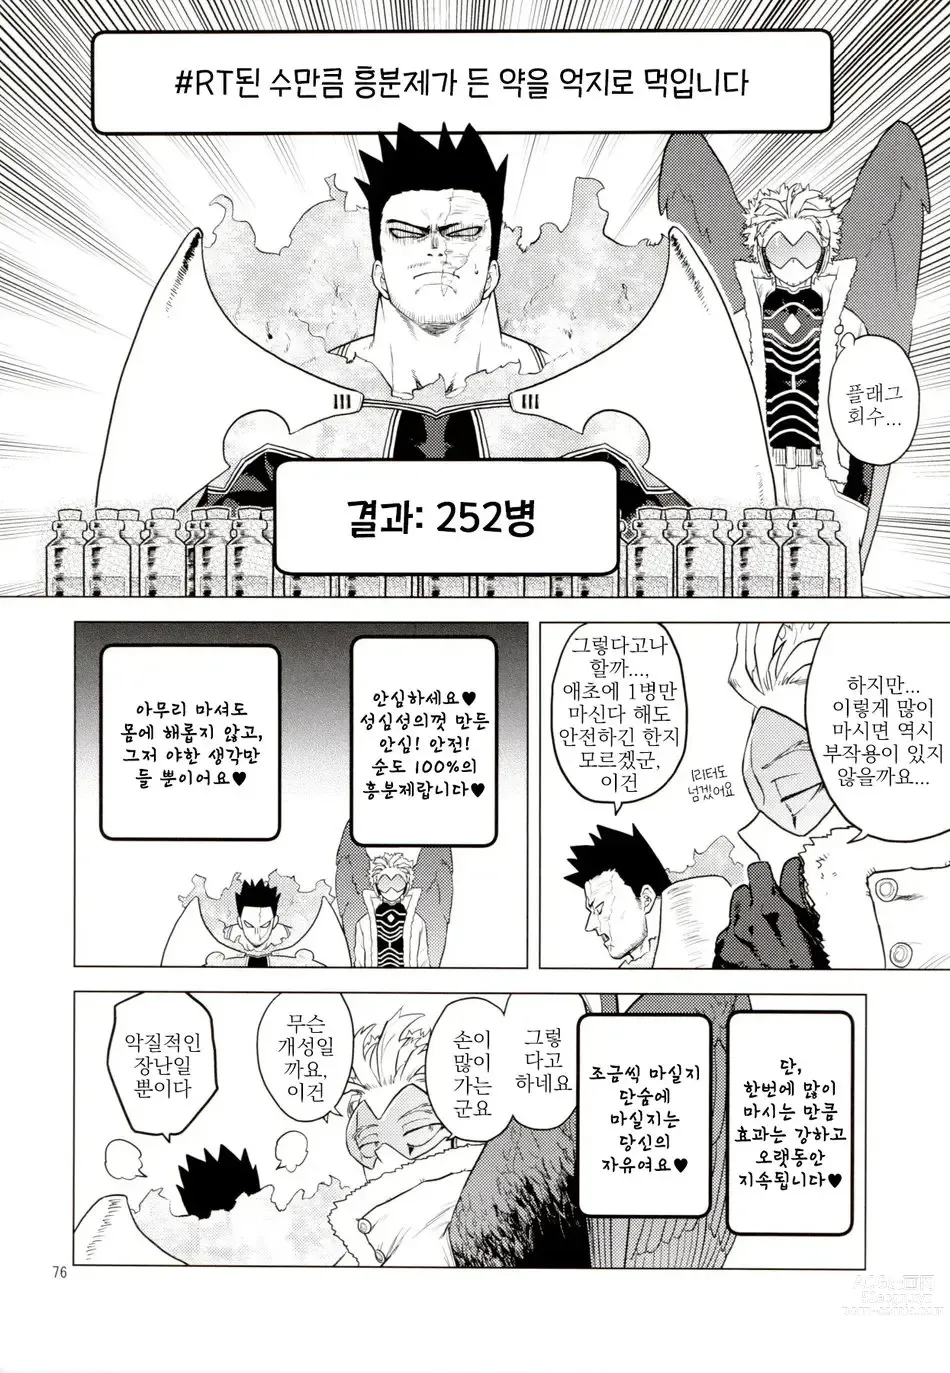 Page 75 of doujinshi Enholog #01